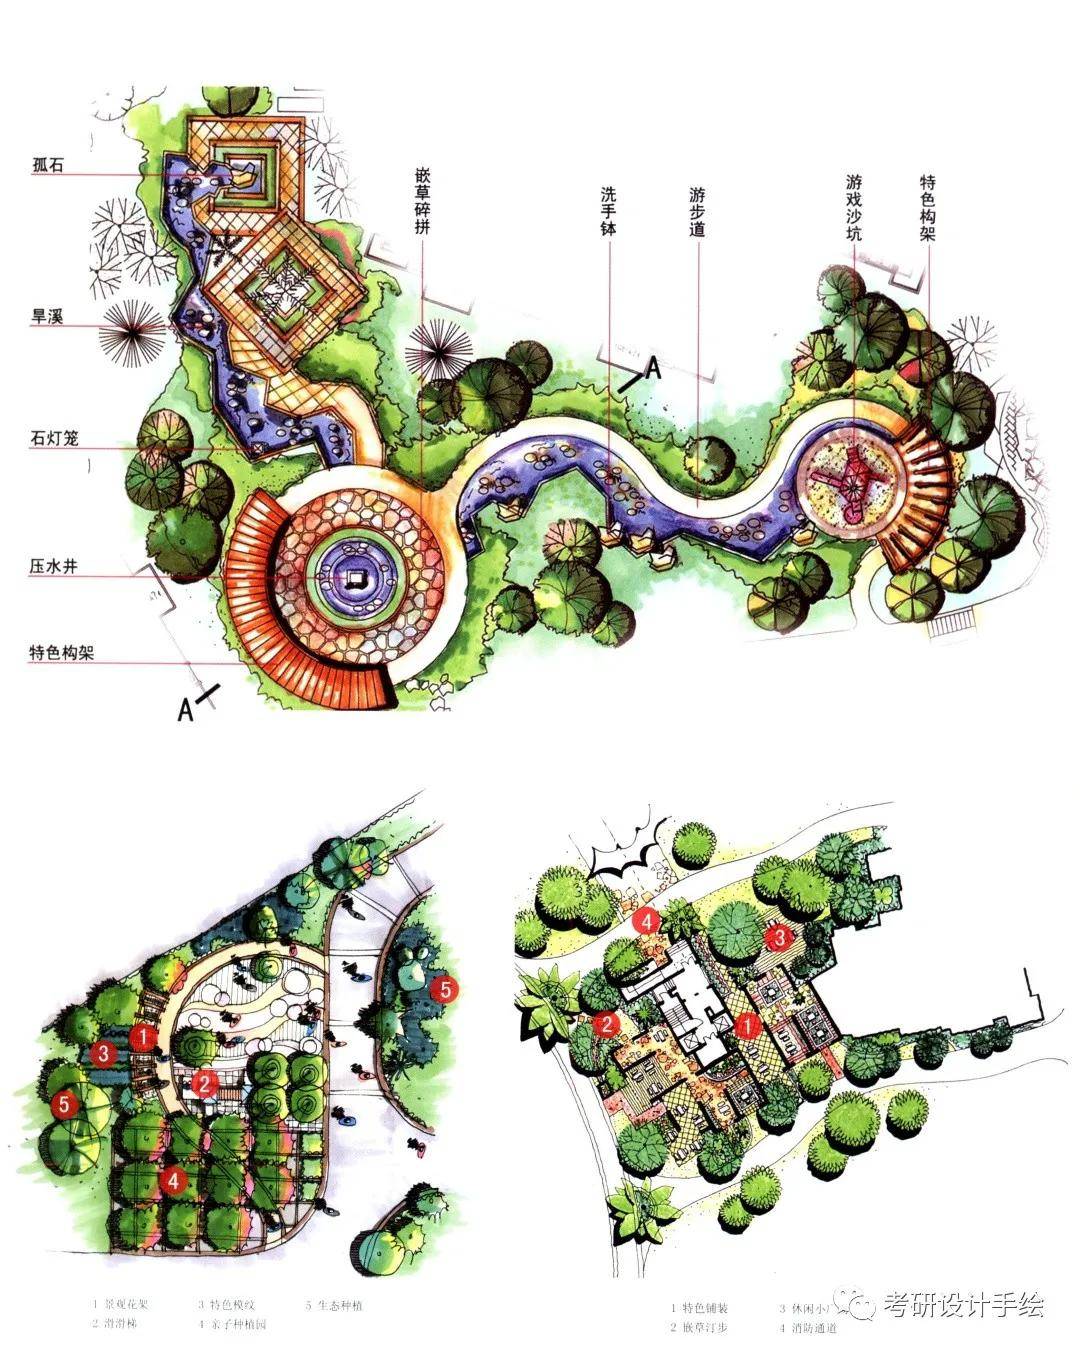 居住区景观设计平面图例12居住区景观设计平面图例13居住区景观设计